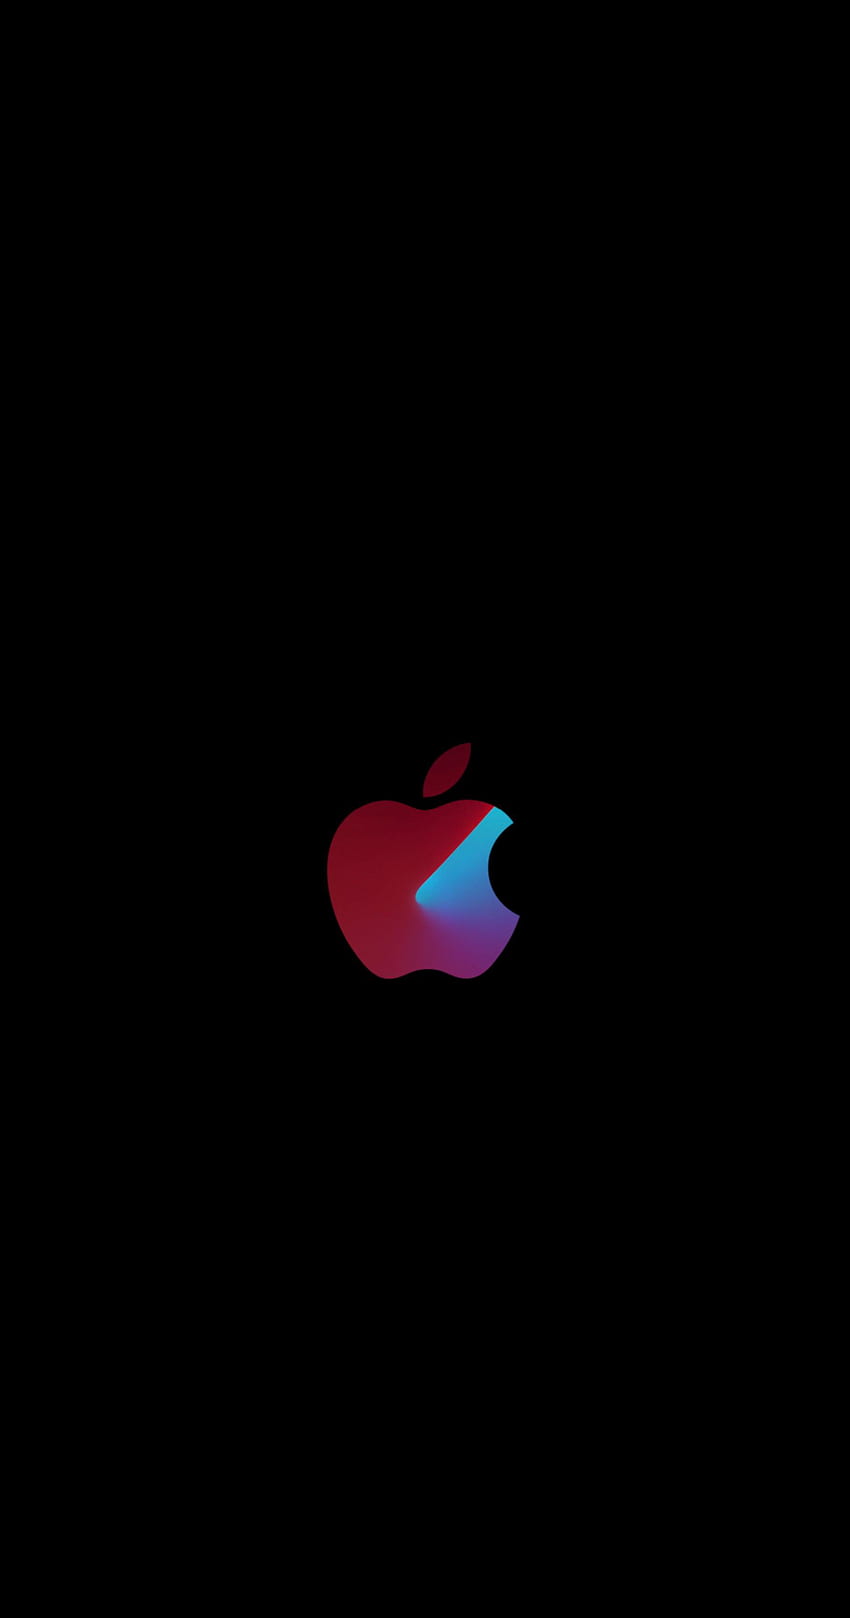 Manzana minimalista Tomé la idea de una de las manzanas actuales y la incorporé con el logo de Apple (): Amoledbackground fondo de pantalla del teléfono